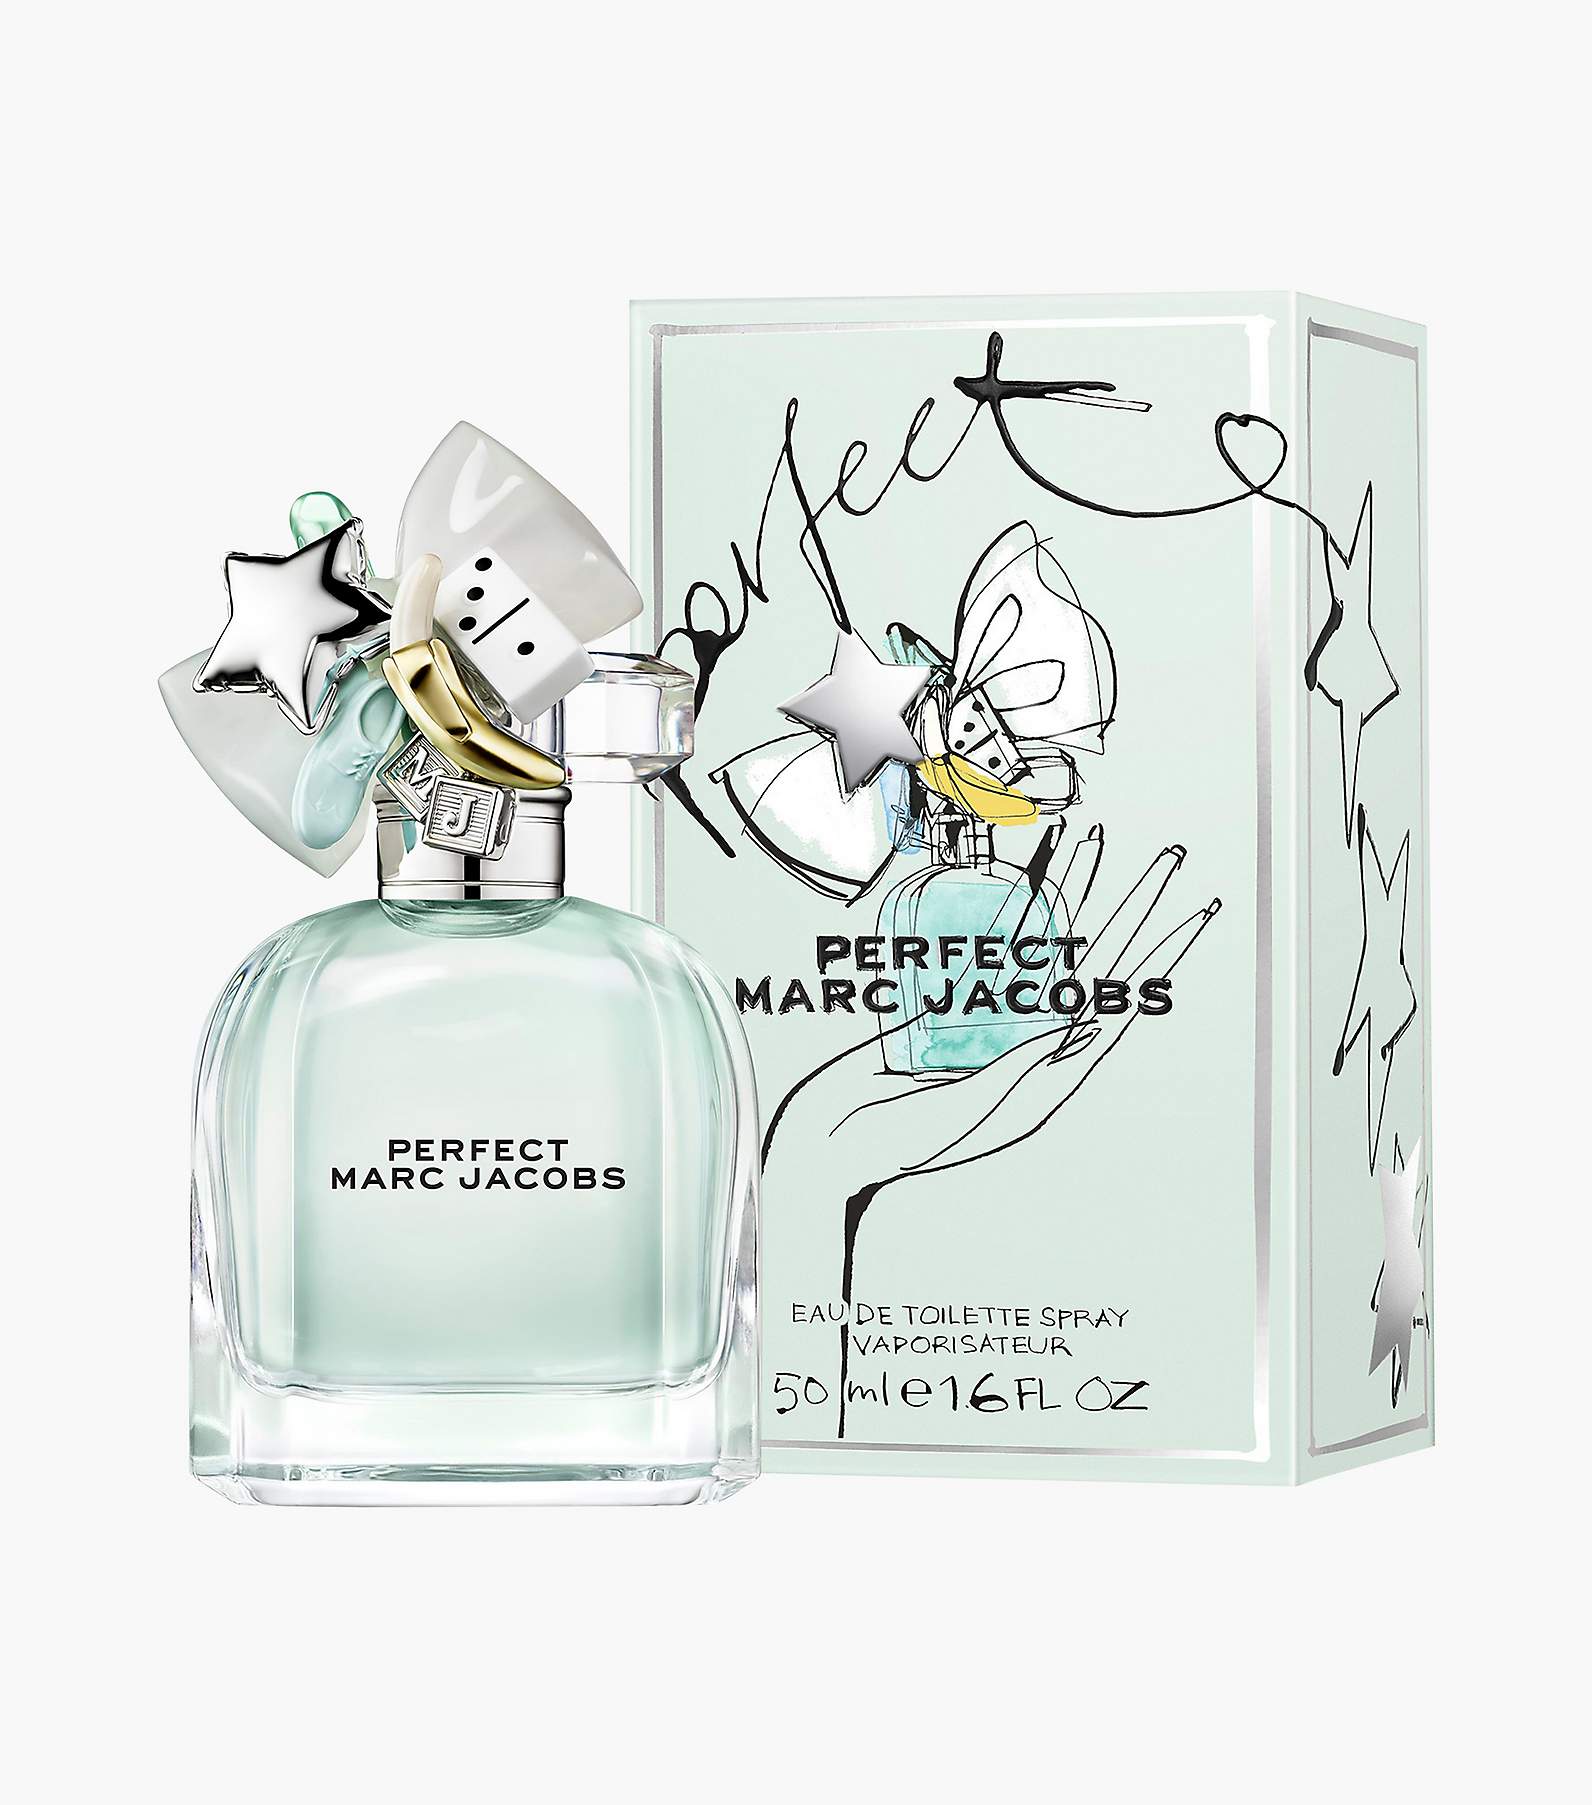 Marc Jacobs Eau De Parfum Spray, Perfect - 100 ml